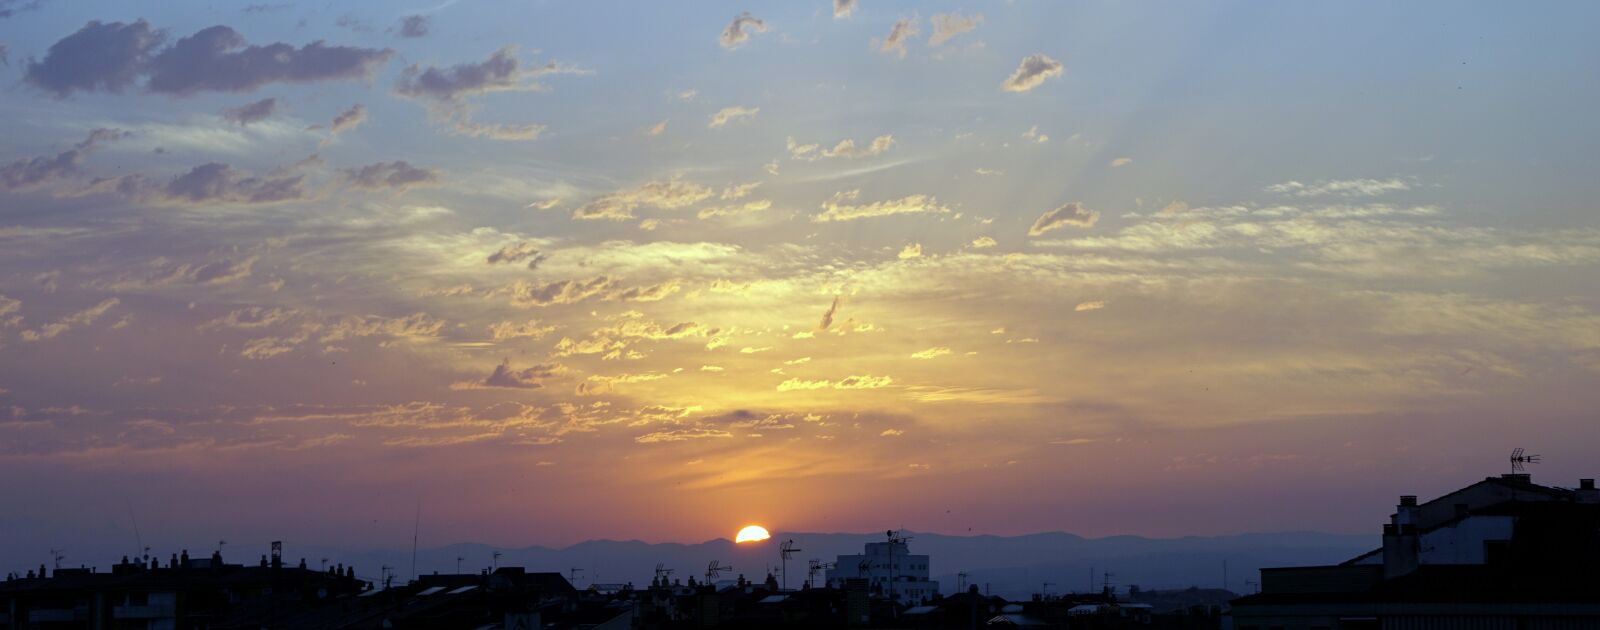 Sony a6000 sample photo. Sun, dawn, horizon photography